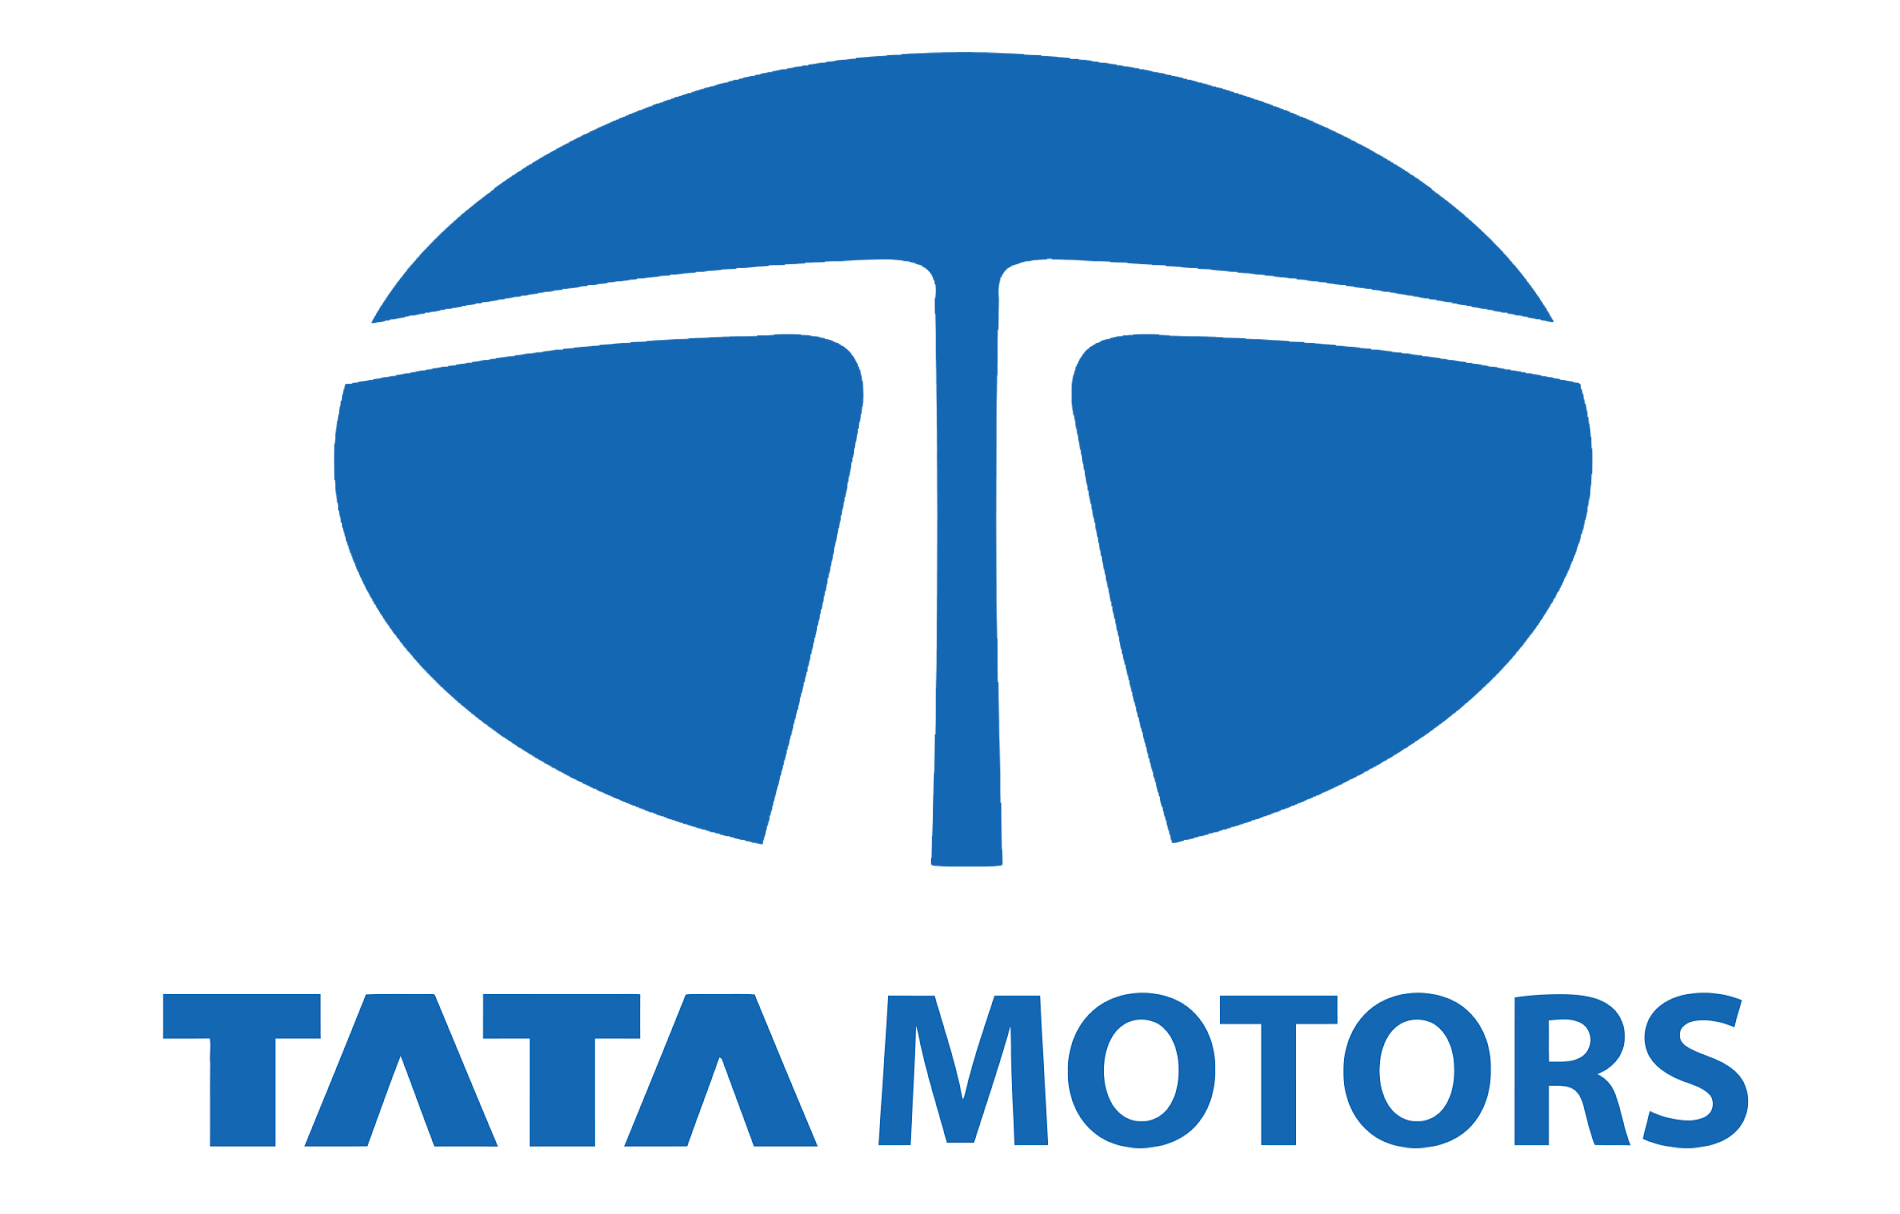 Tata Motors Cars Showroom - Sagar Motors|Service Center|Automotive